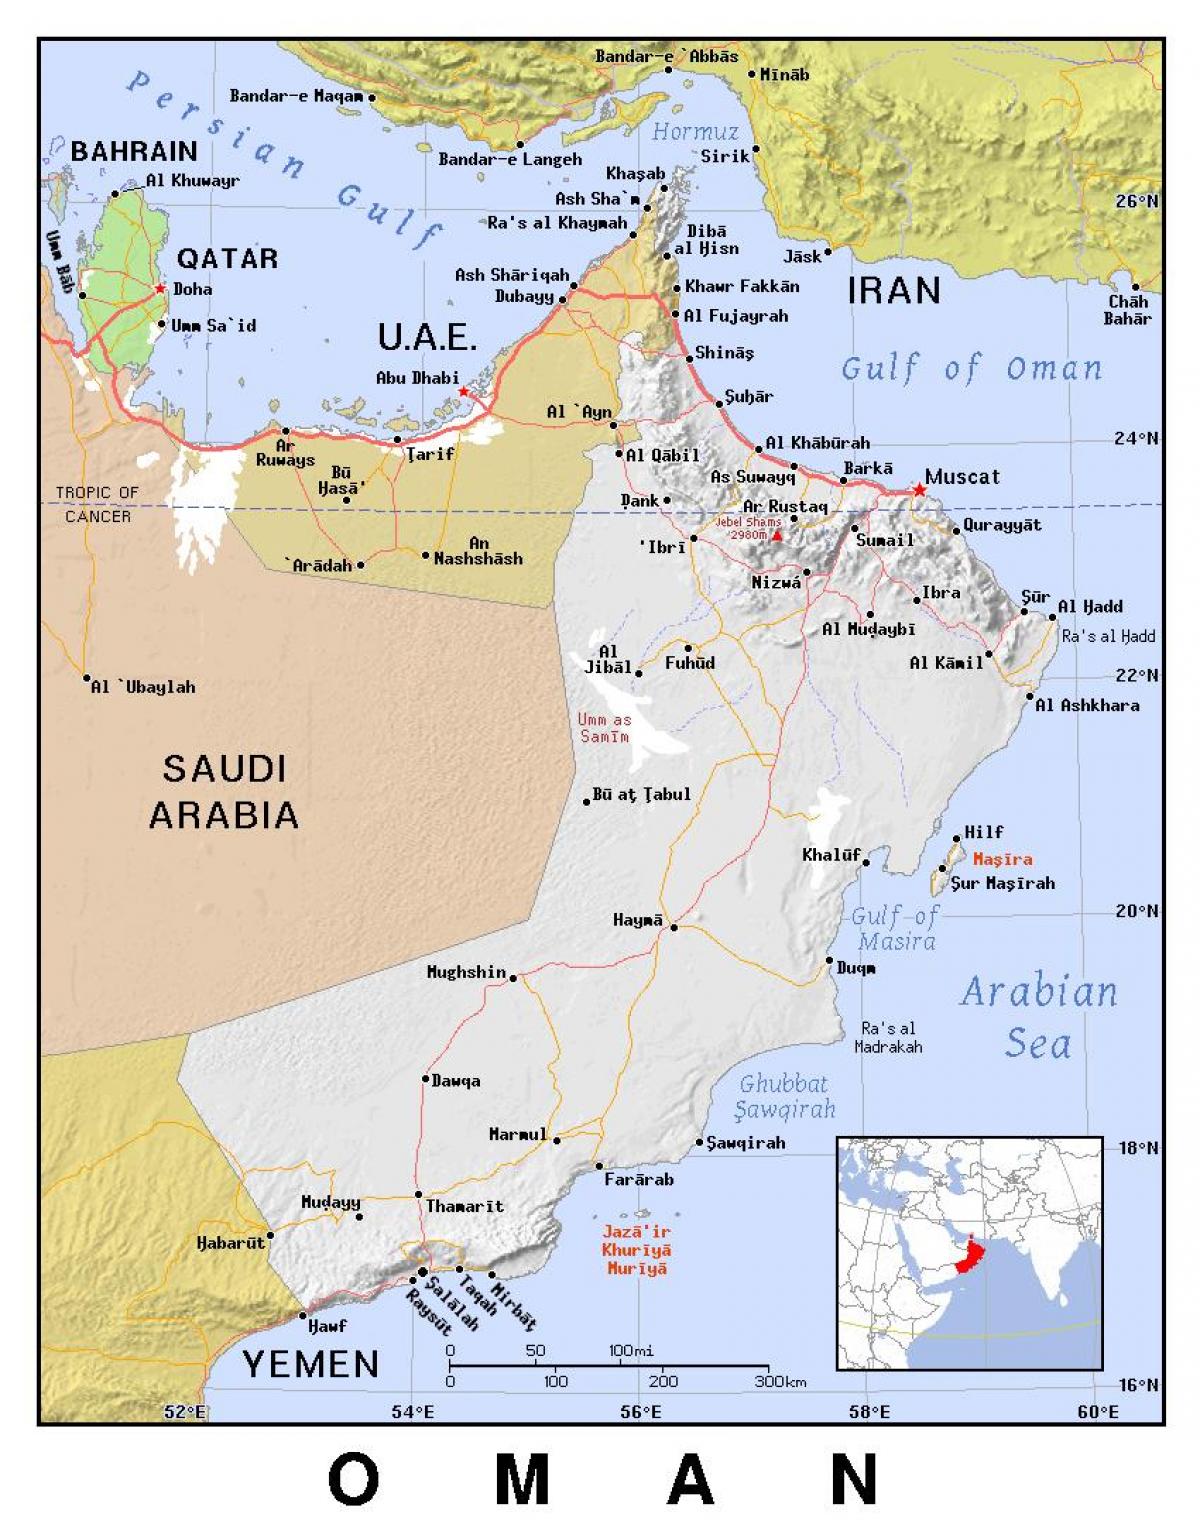 نقشہ عمان کے سیاسی